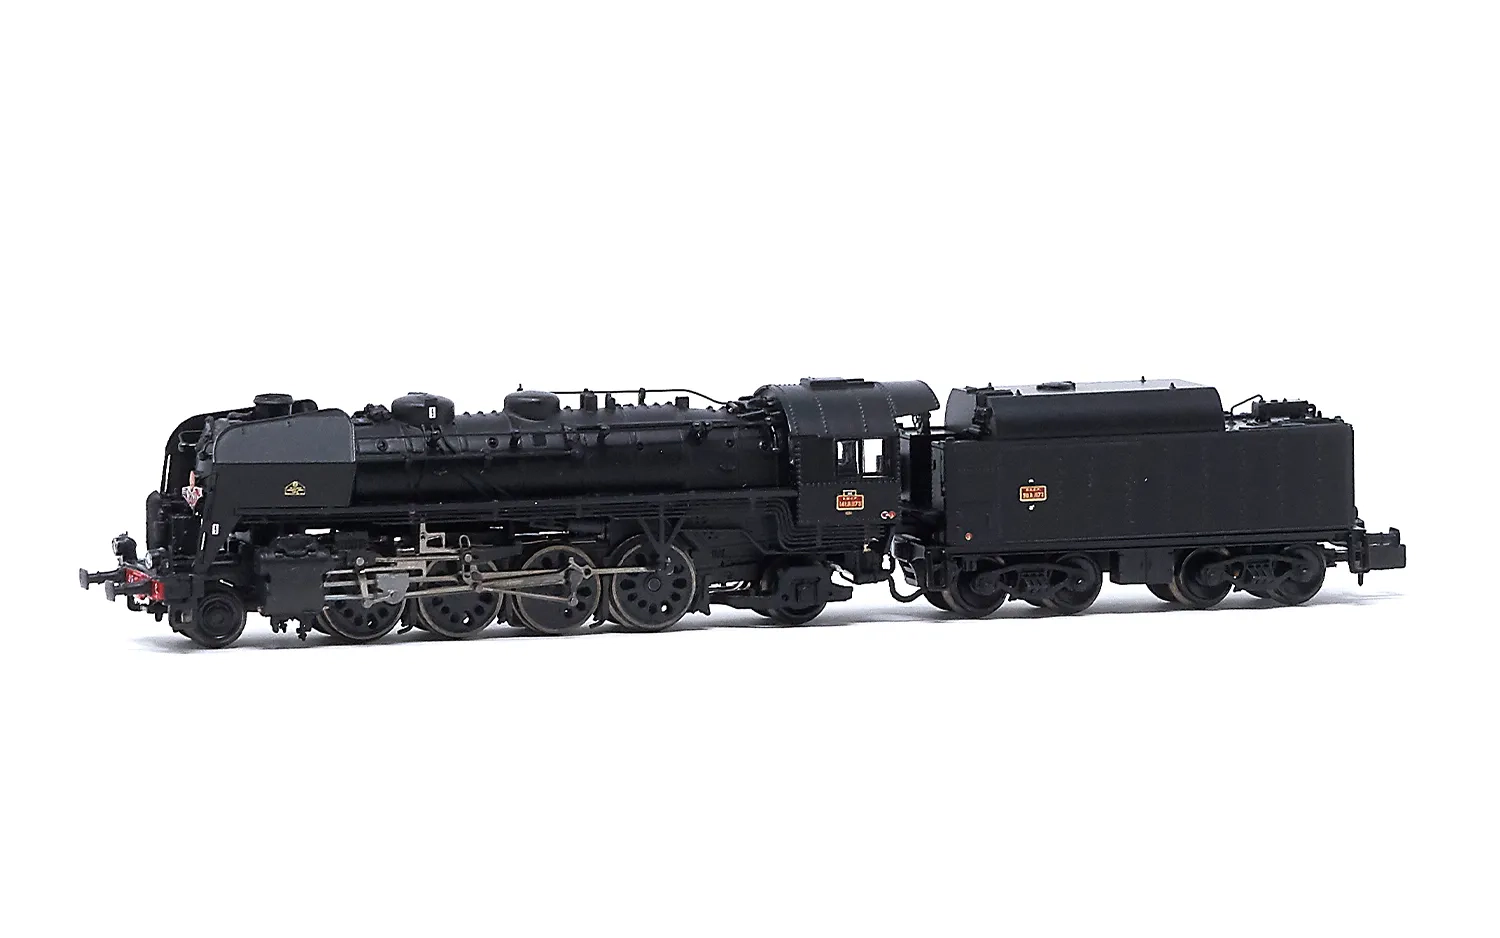 SNCF, Dampflokomotive 141 R 1173 "Mistral", mit Boxpok-Rädern auf allen Treib-und Kuppelachsen, Tender mit großem Ölbunker, in schwarzer Lackierung, Ep. III